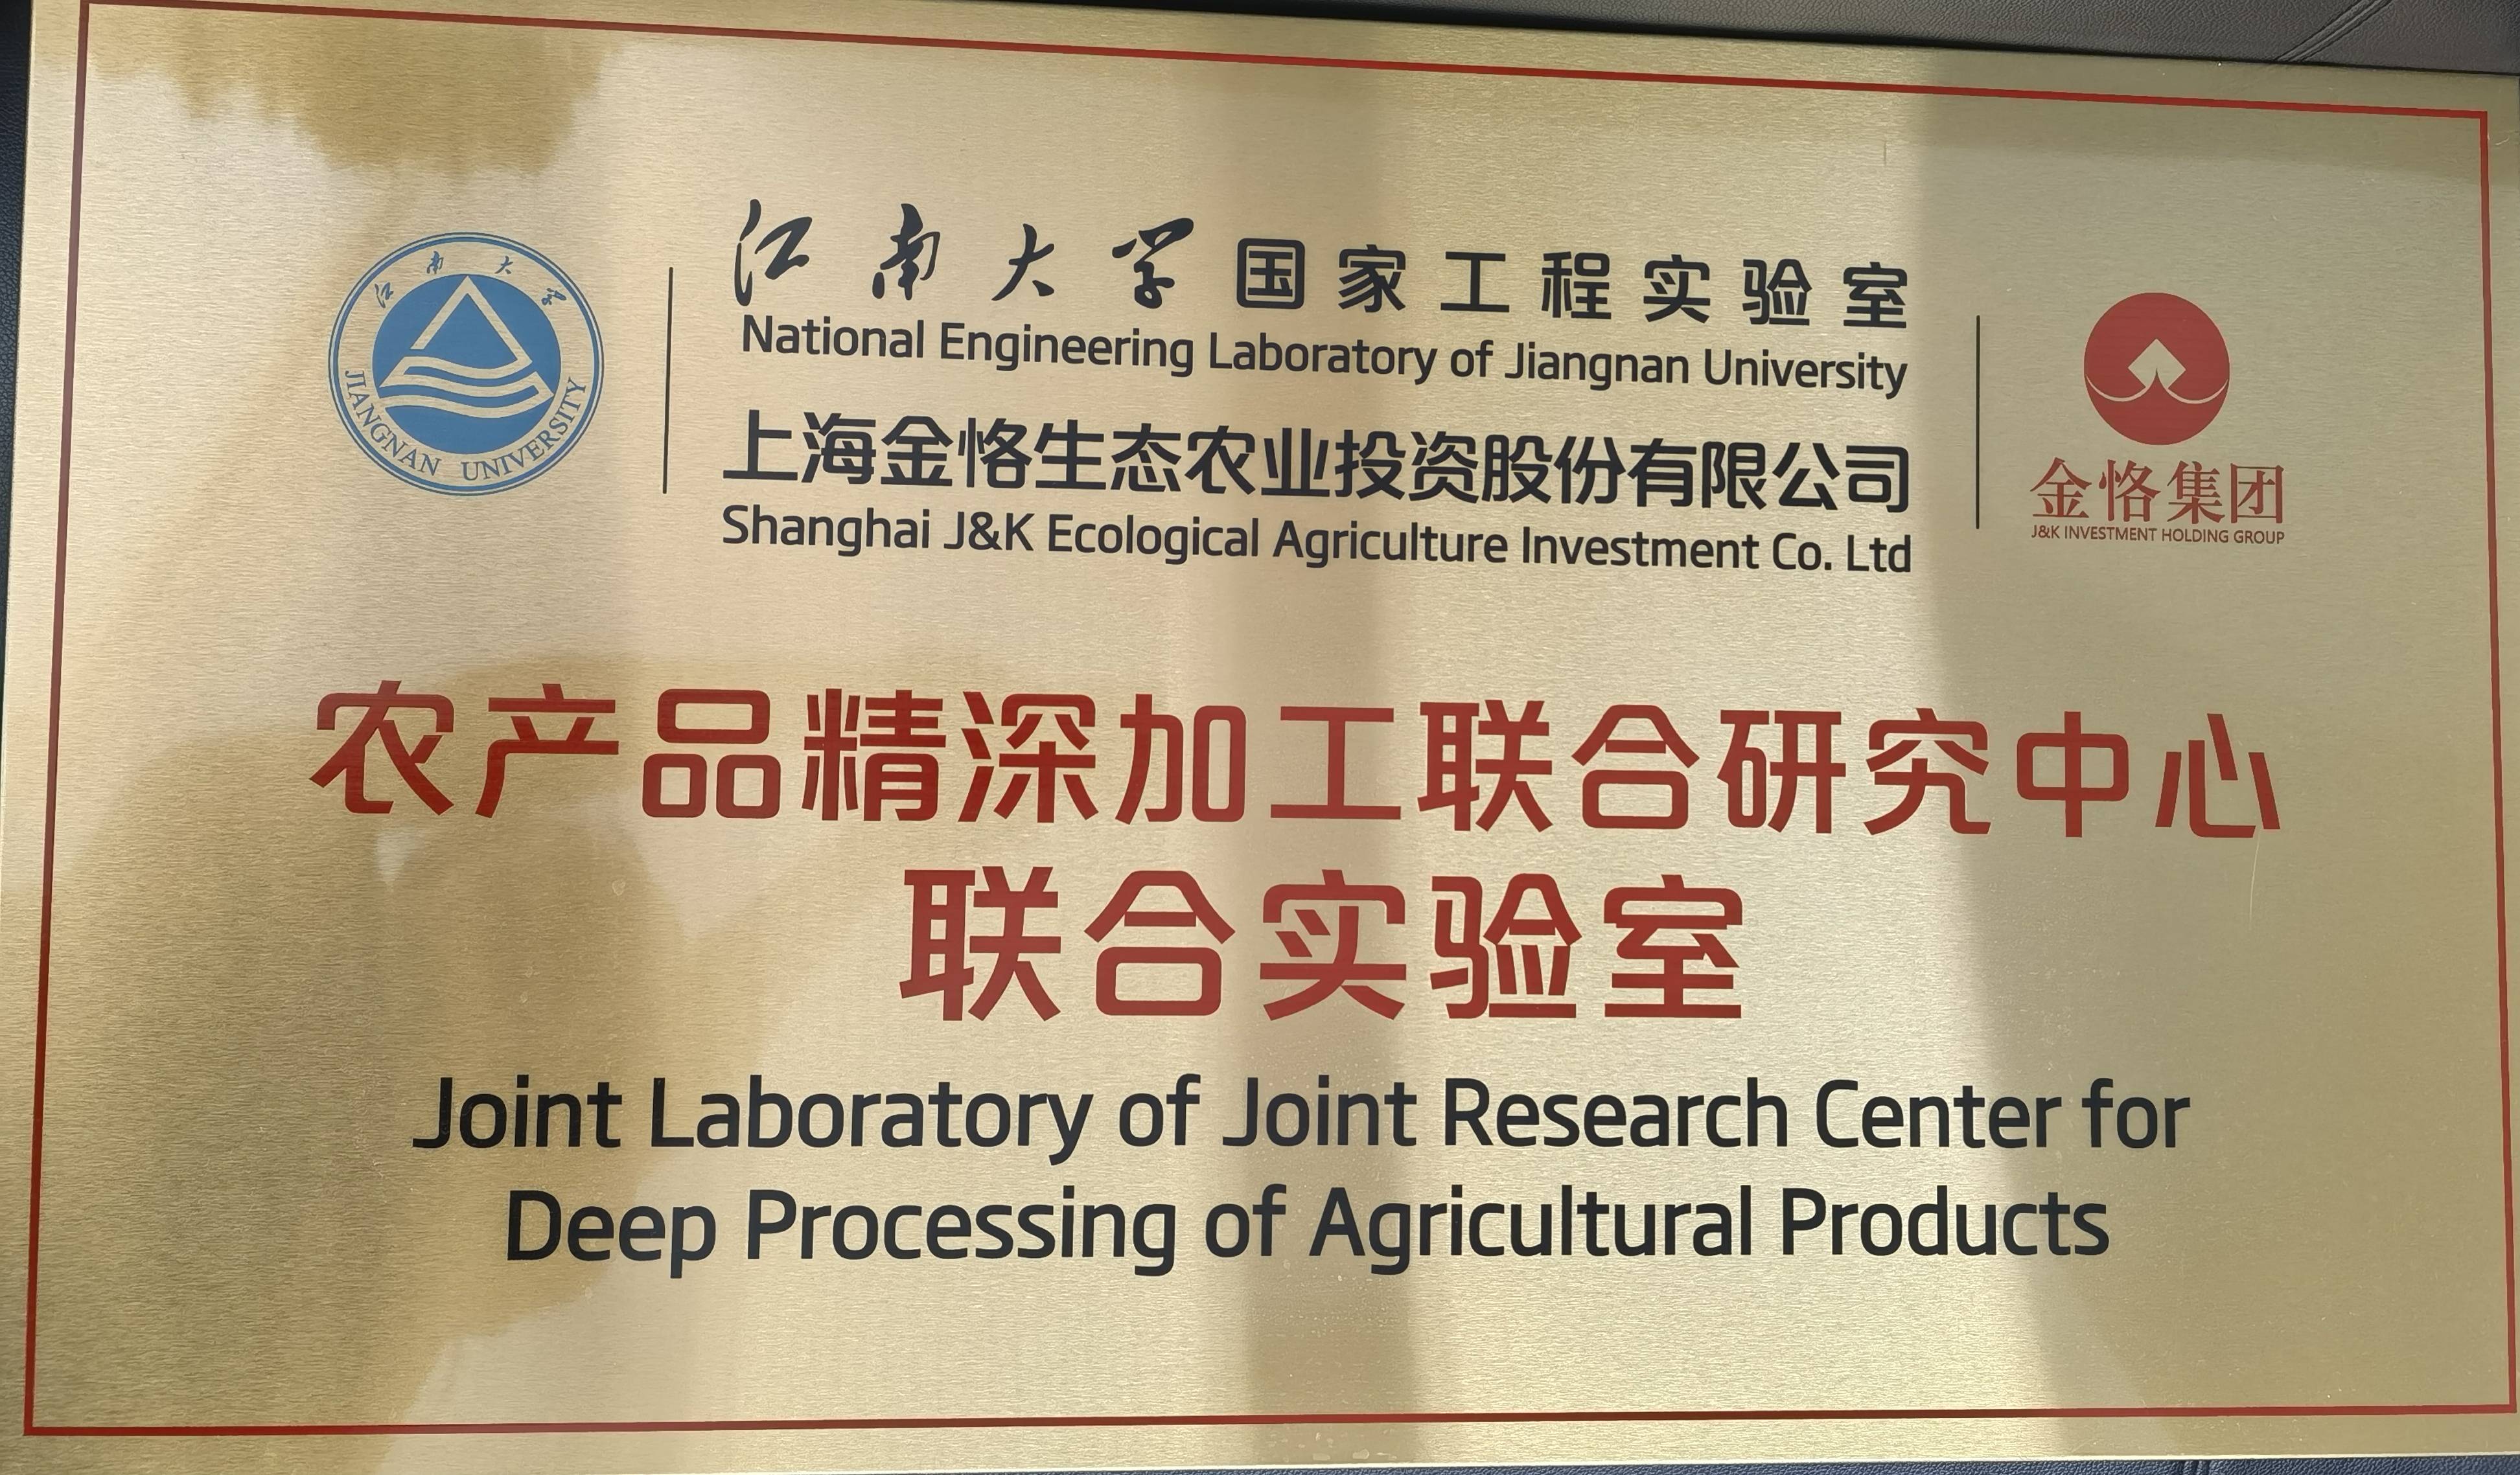 同时,浙江柏灵还与上海交通大学芳香植物研发中心联合成立香榧深加工